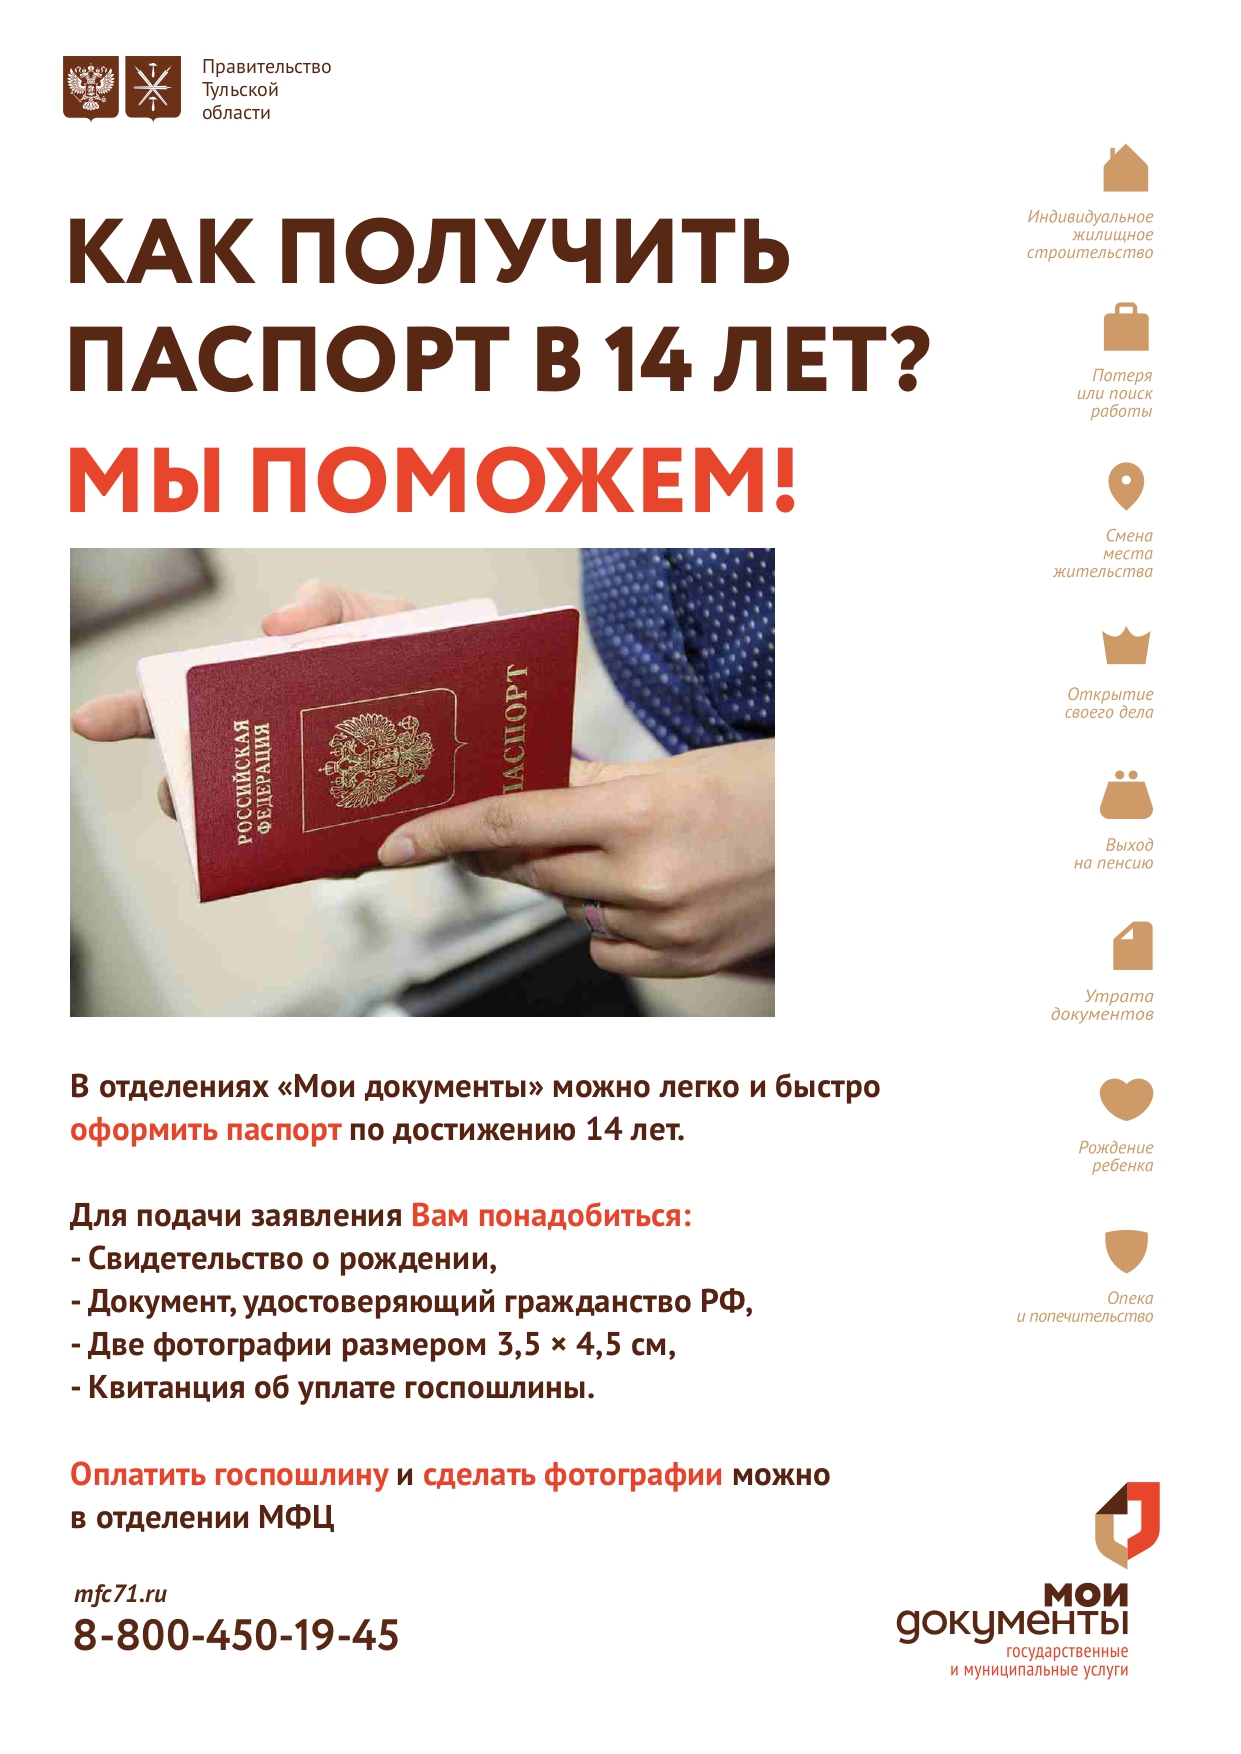 Памятка о получении паспорта гражданина РФ.